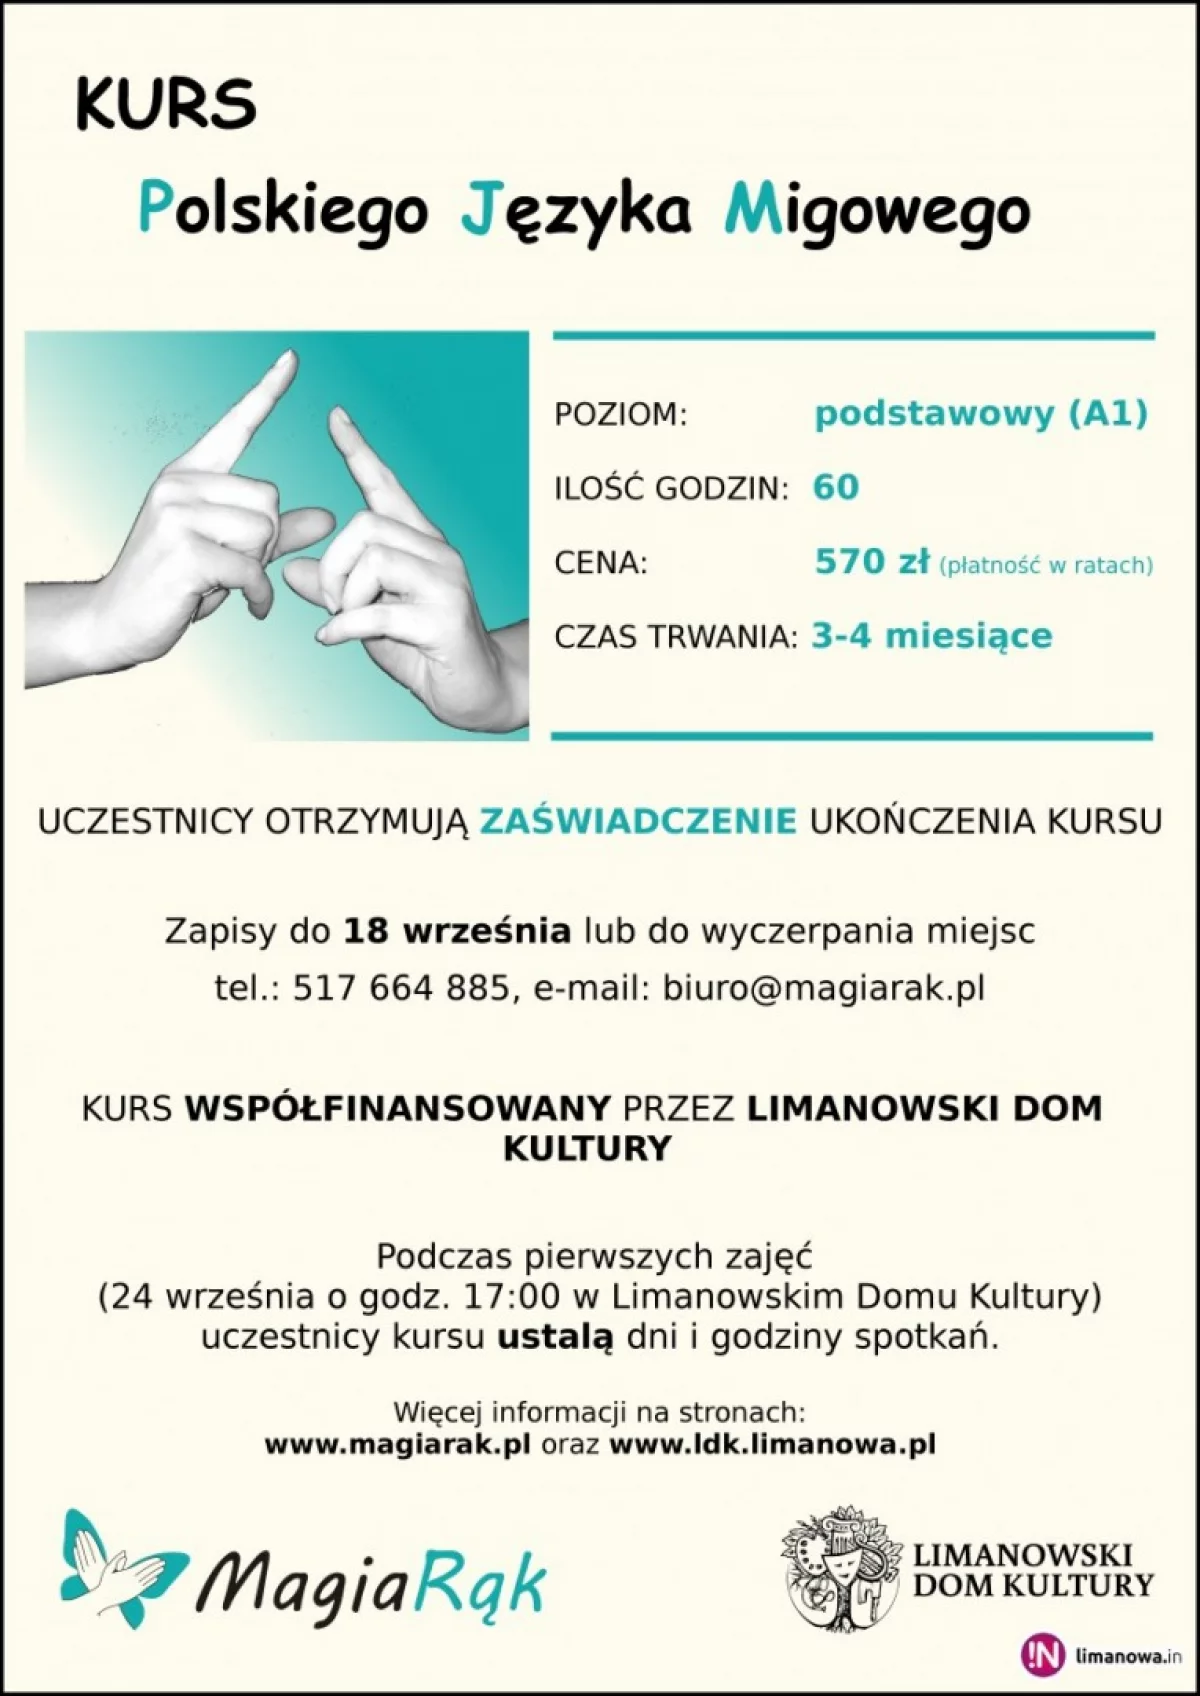 Kurs Polskiego Języka Migowego w Limanowskim Domu Kultury